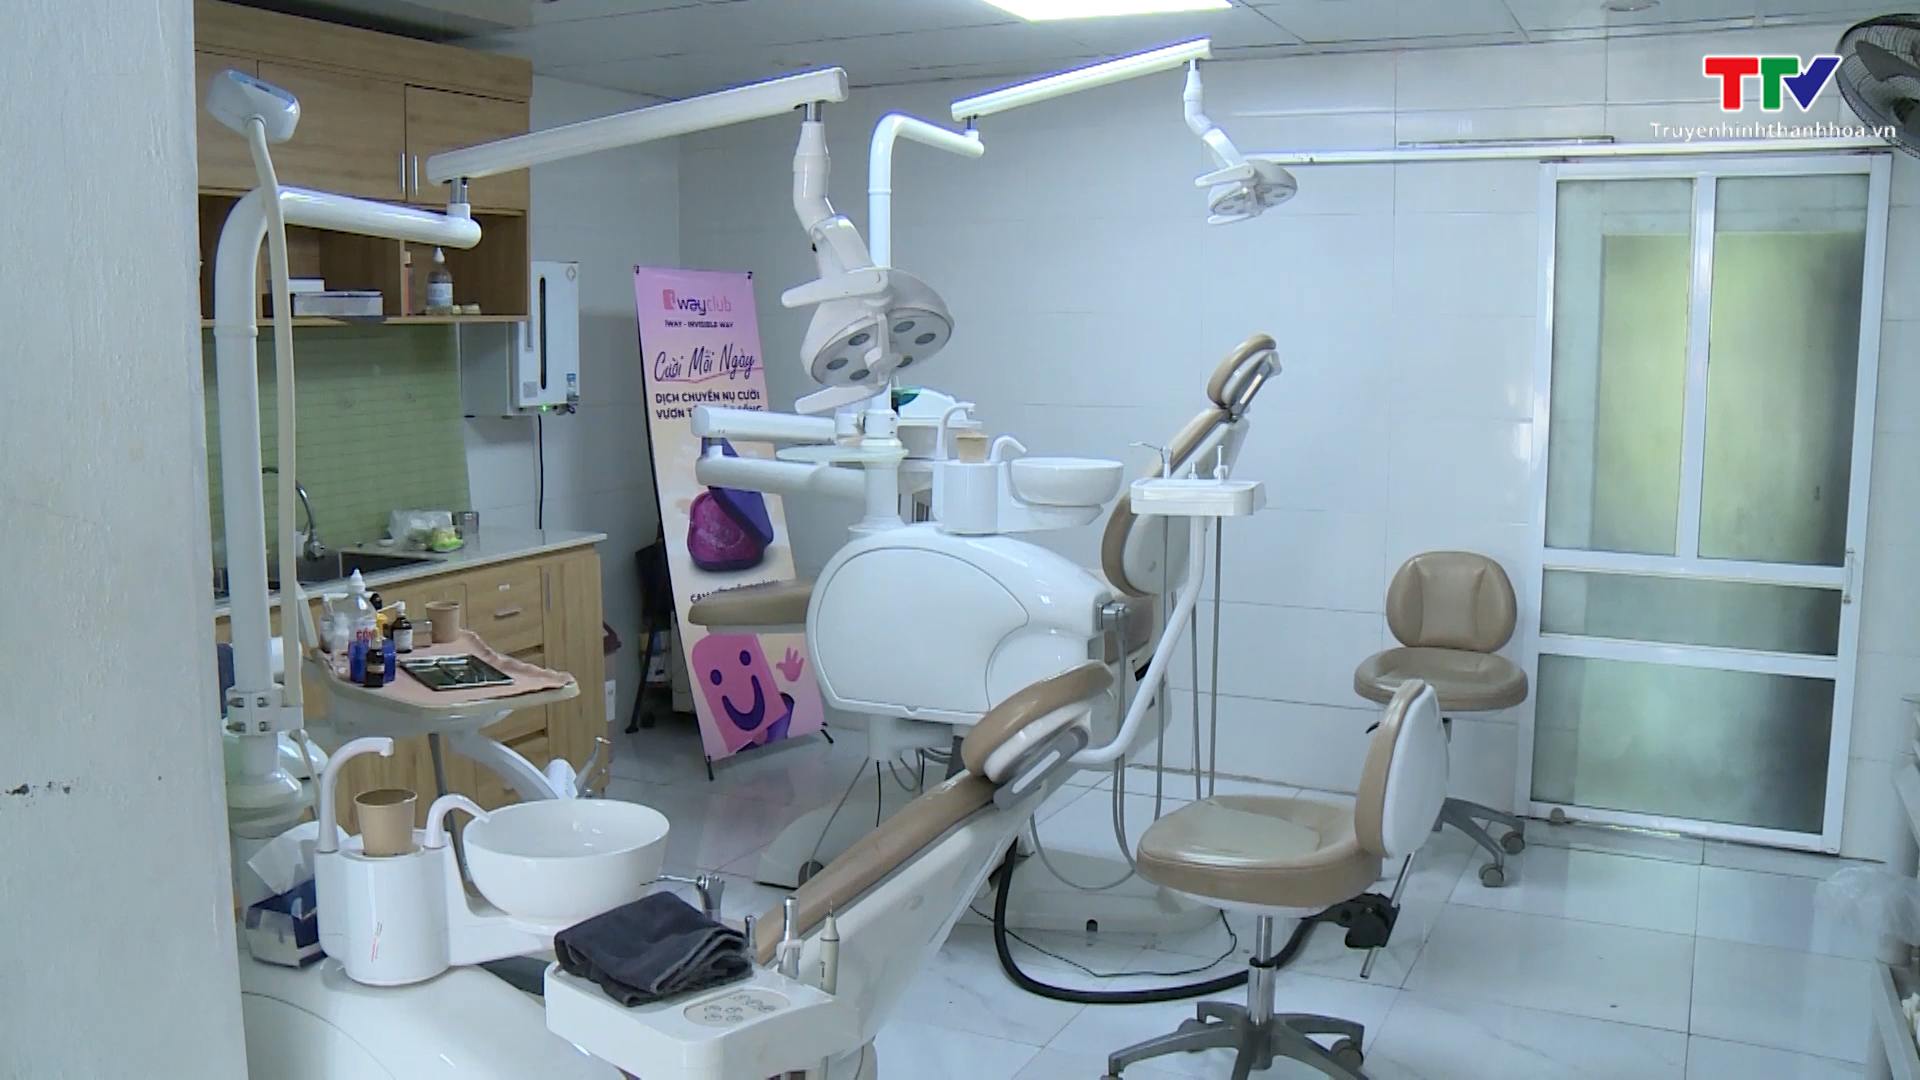 Xử phạt 2 phòng khám răng không phép trên địa bàn thành phố Thanh Hoá - Ảnh 3.